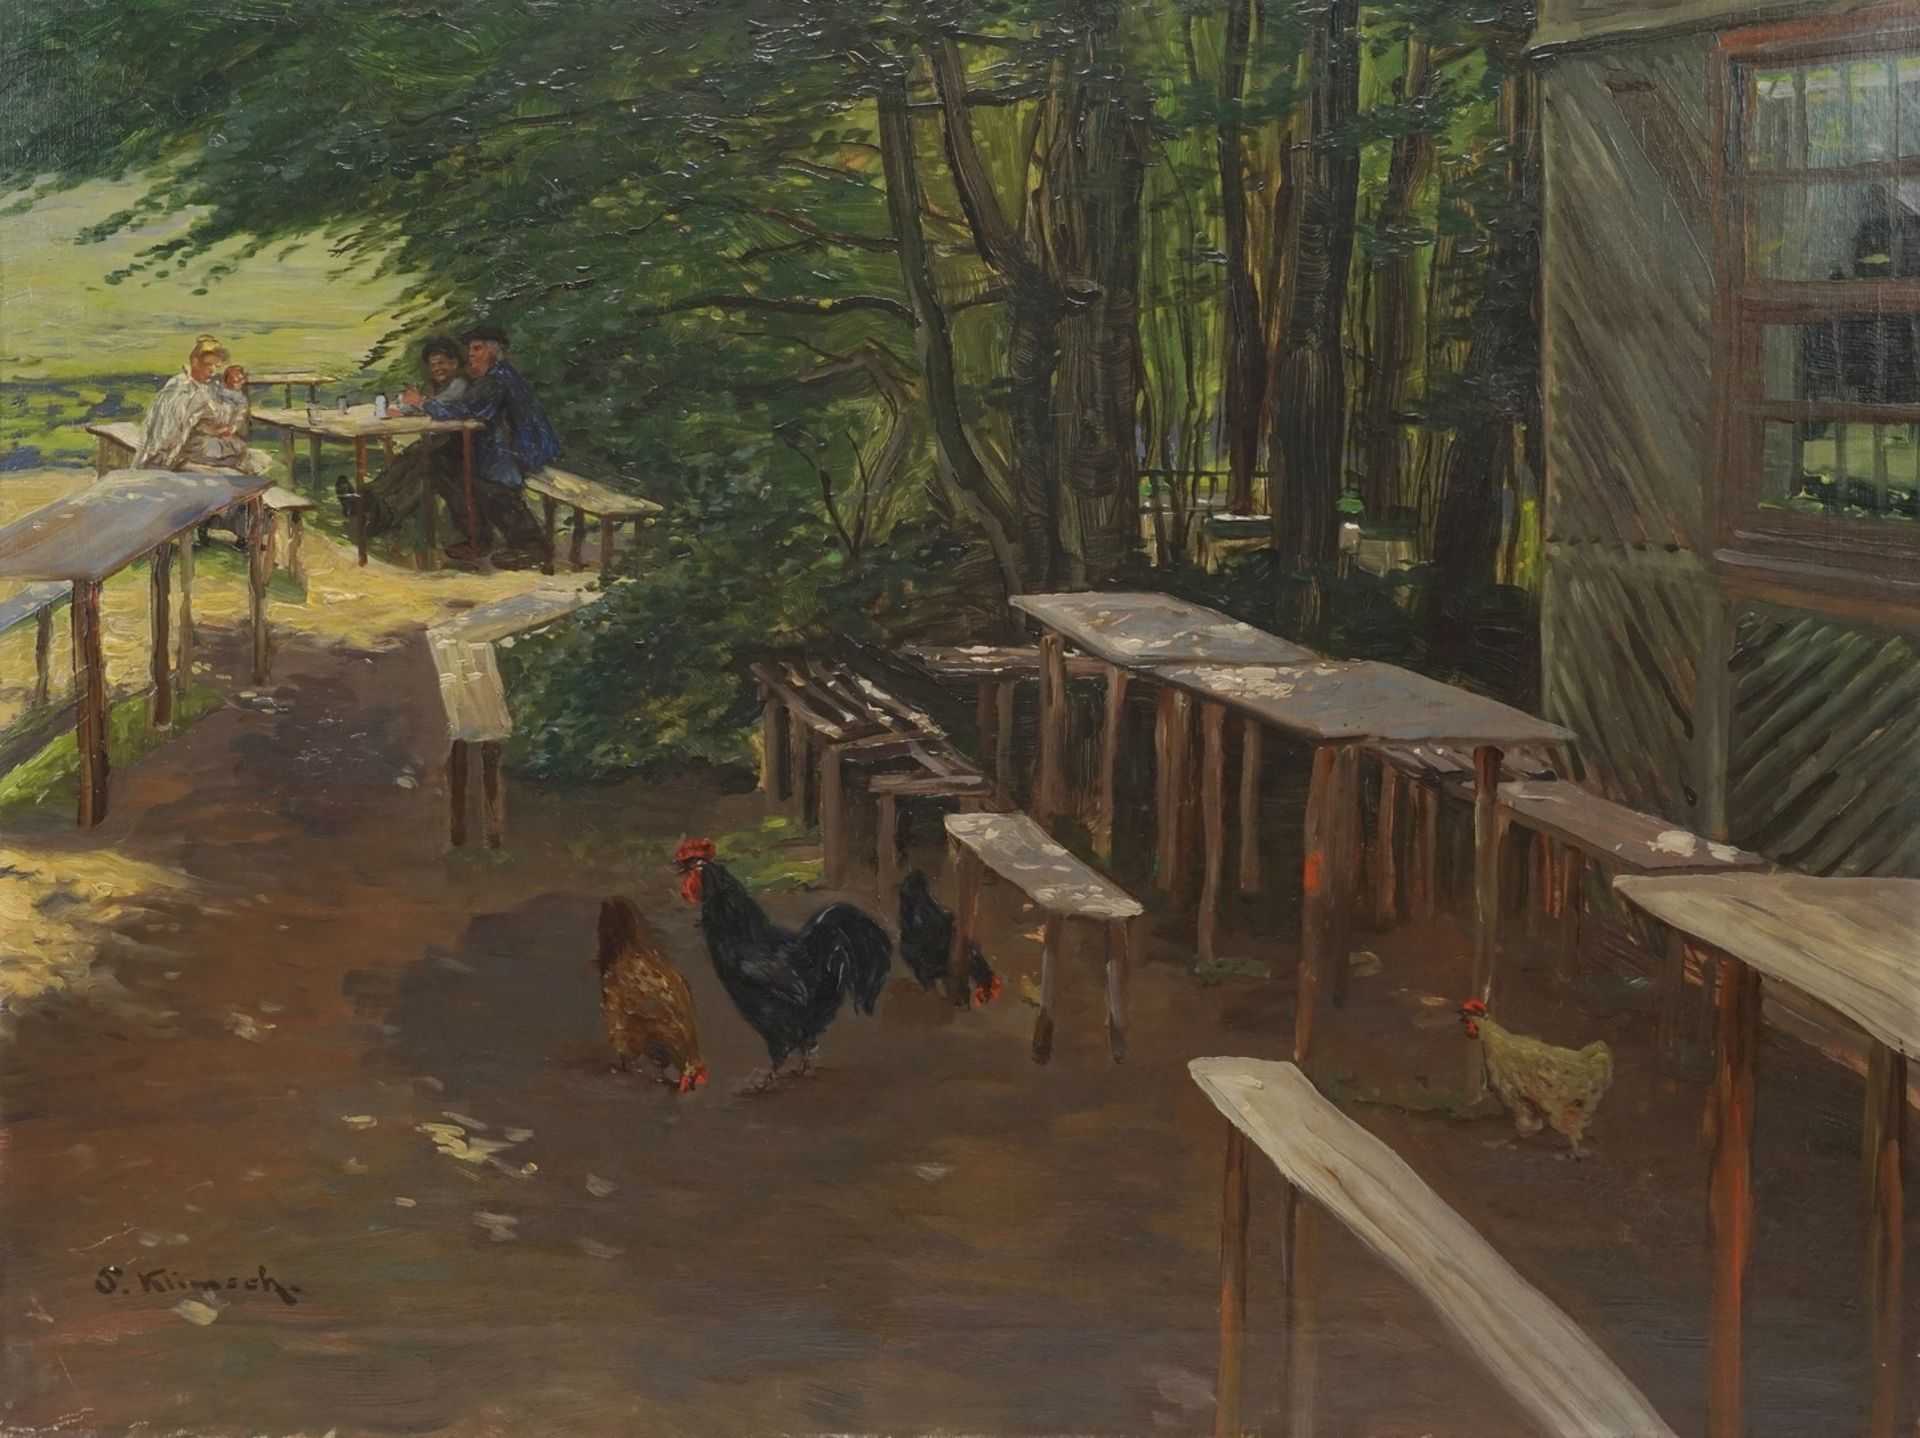 S. Klimsch, "Hühner auf dem Rastplatz"Öl/Leinwand, unten links signiert, leere Tische und Bänke,